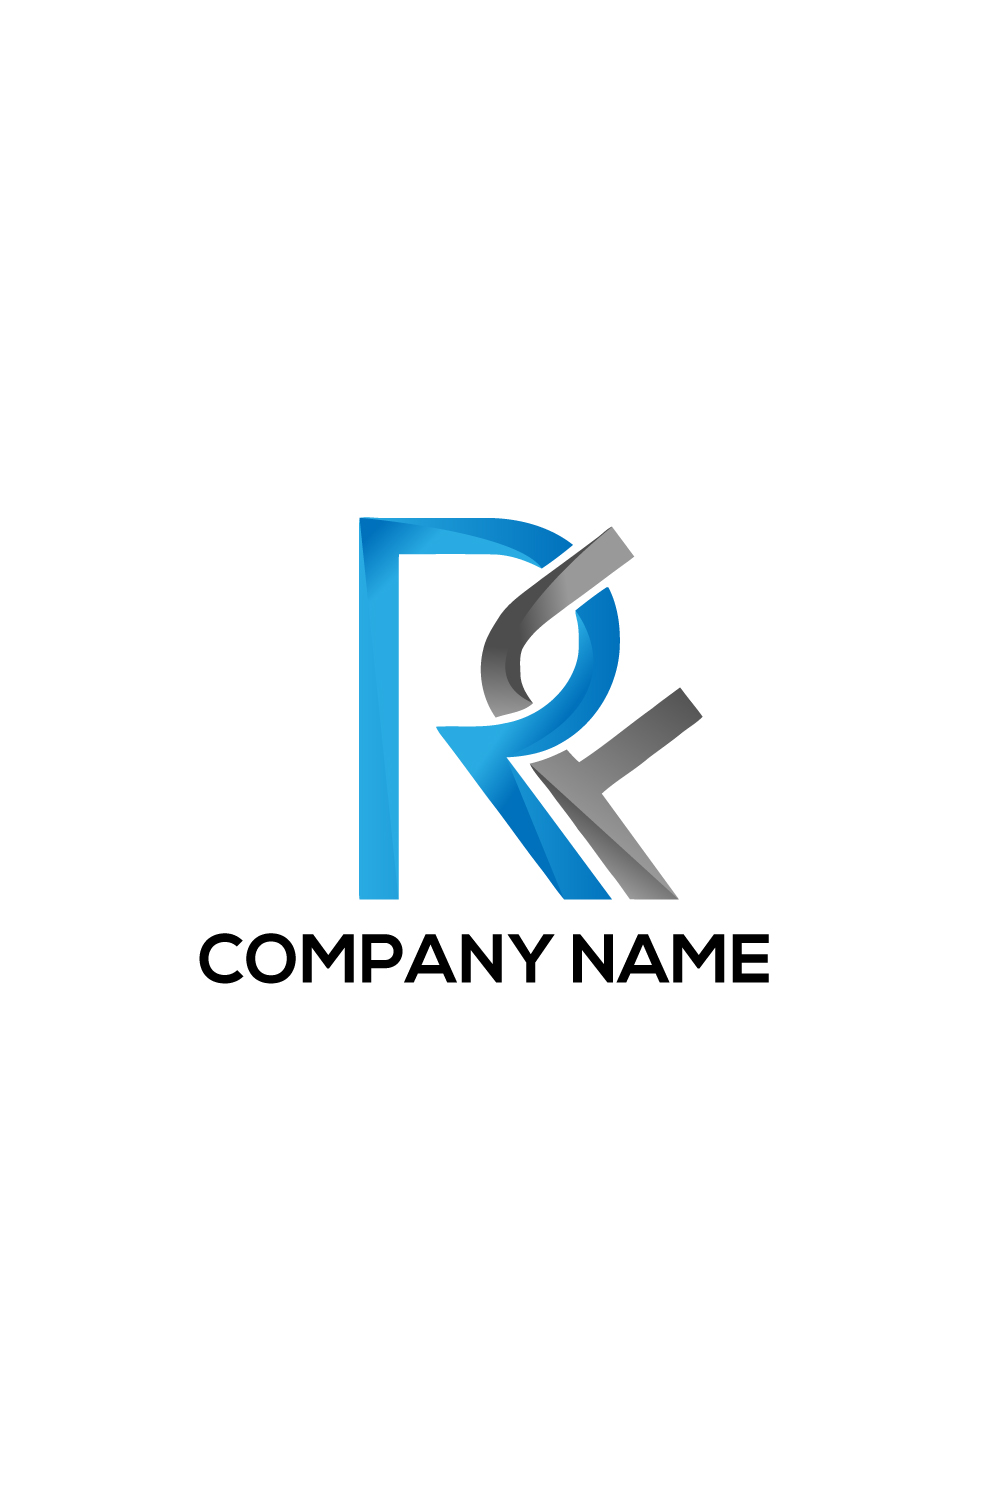 RF logo, RF Letter, RF design, RF icon, RF business pinterest preview image.